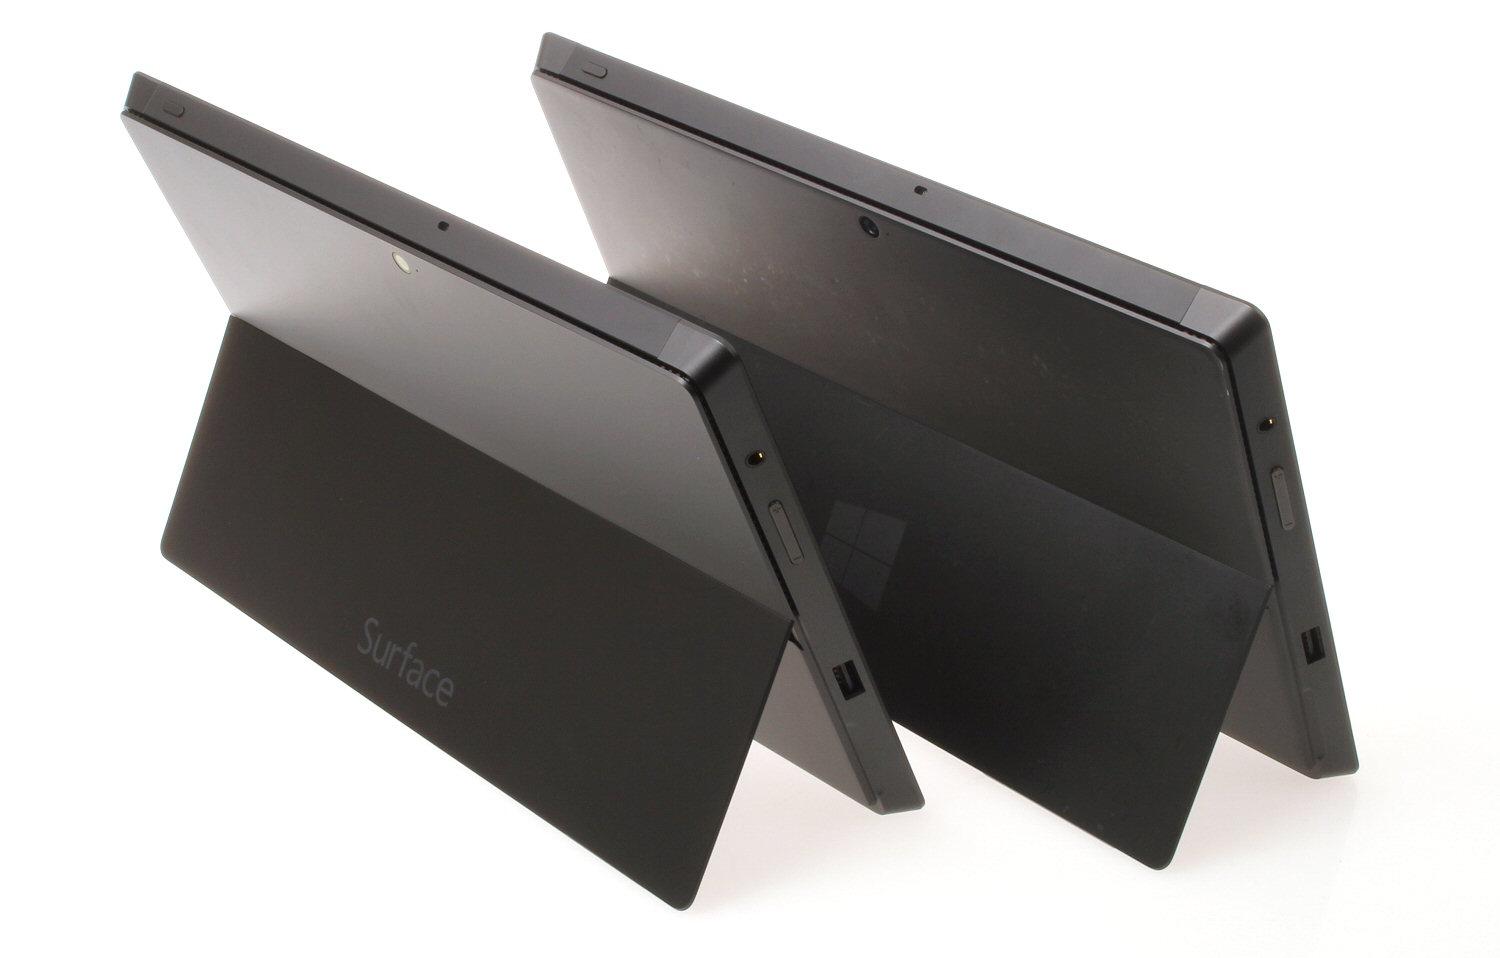 En forskjell ligger i selve pynten – Surface Pro har Windows-logo, mens Pro 2 har fått merkevarenavnet sitt på ryggen.Foto: Vegar Jansen, Hardware.no